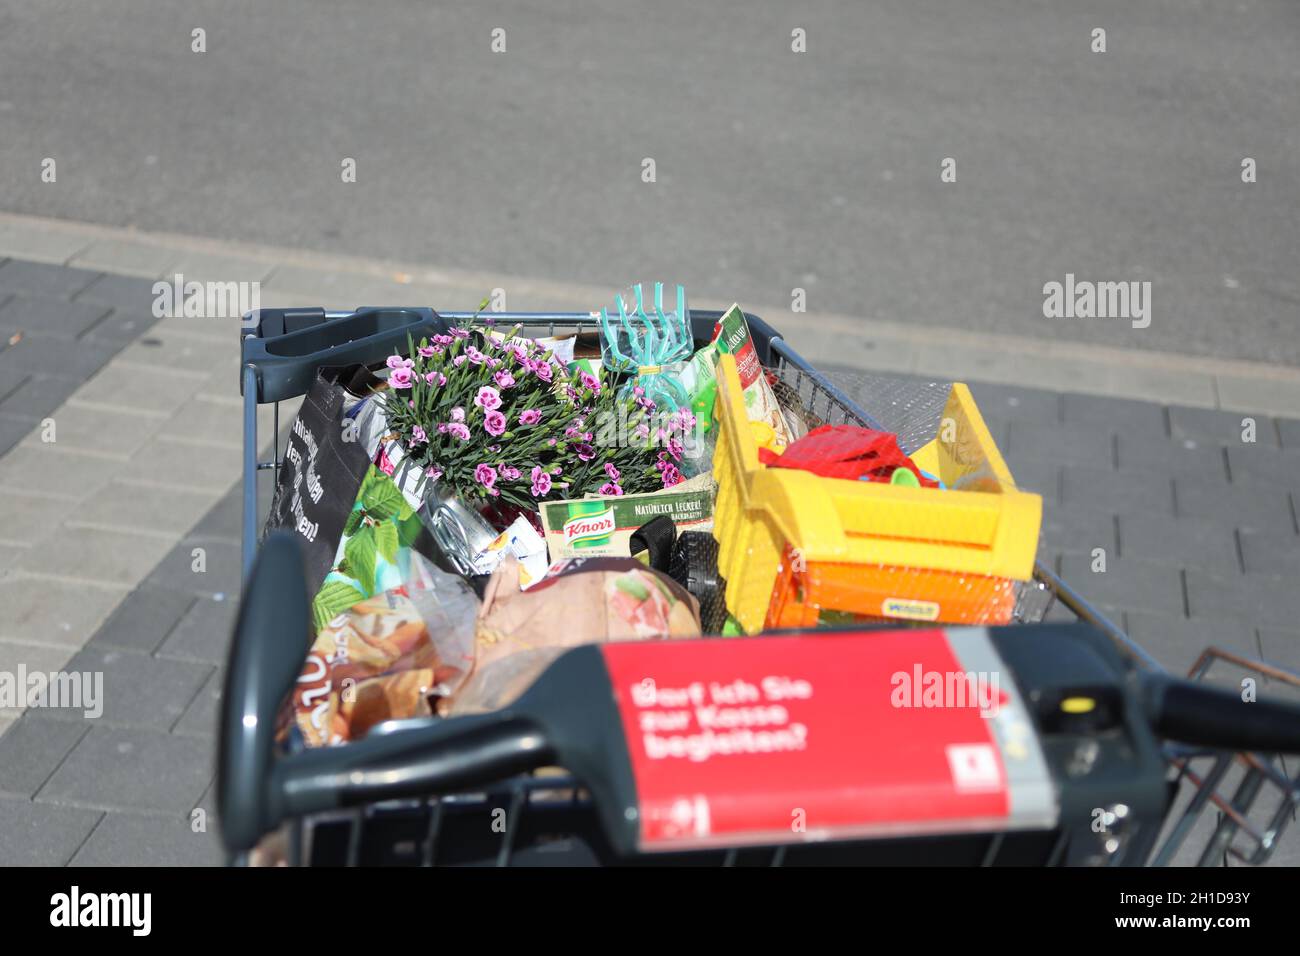 Voller Einkaufswagen vor dem Discounter Kaufland, mit Lebensmittel, Blumen und Spielsachen, Themenbild - Handel - Wirtschaft - Industrie Banque D'Images